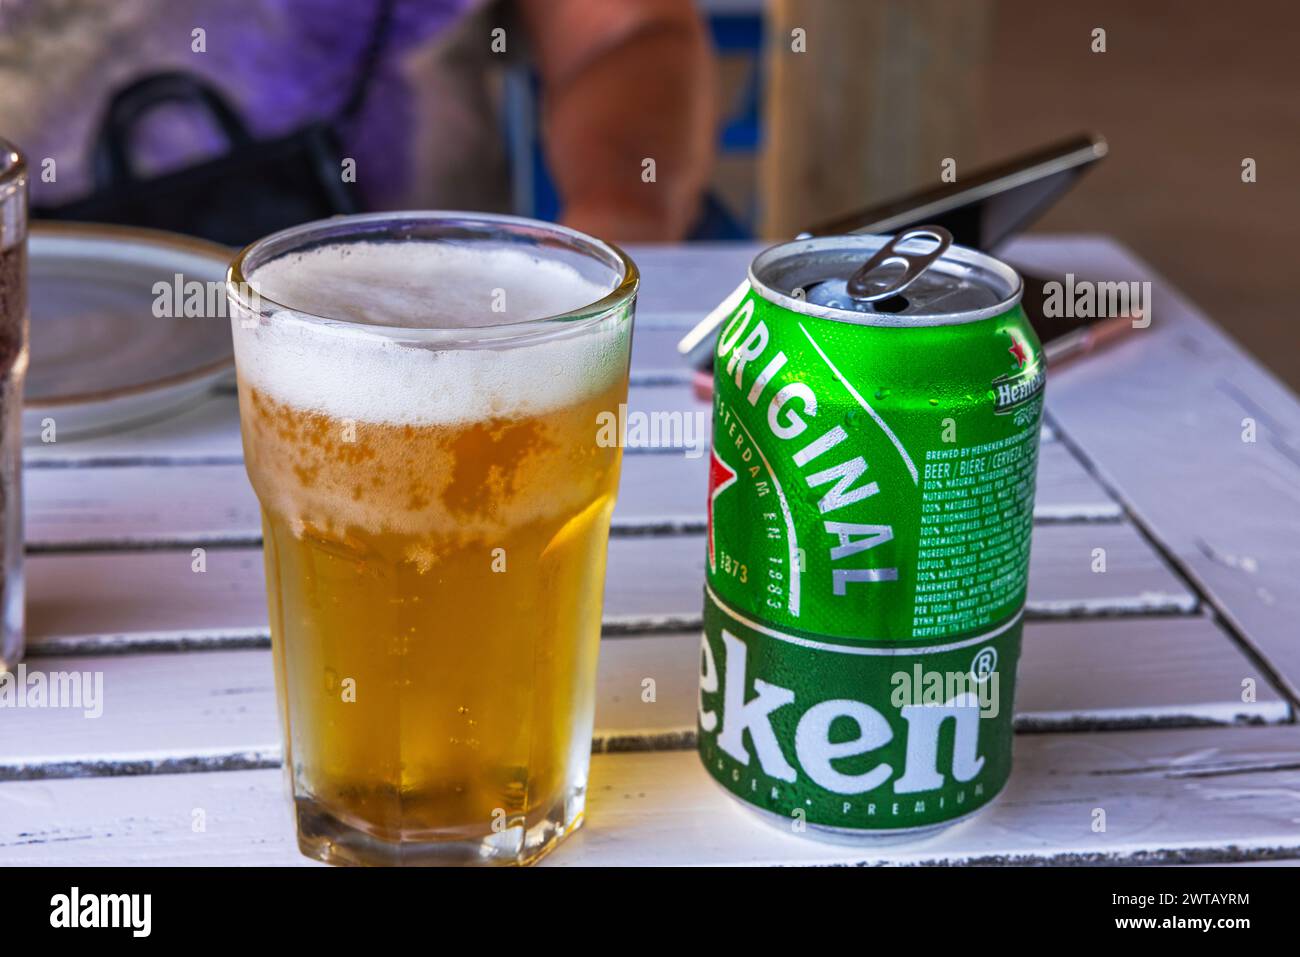 Vue rapprochée d'un verre rempli de bière froide et d'une canette de bière Heineken debout sur une table en bois. Banque D'Images